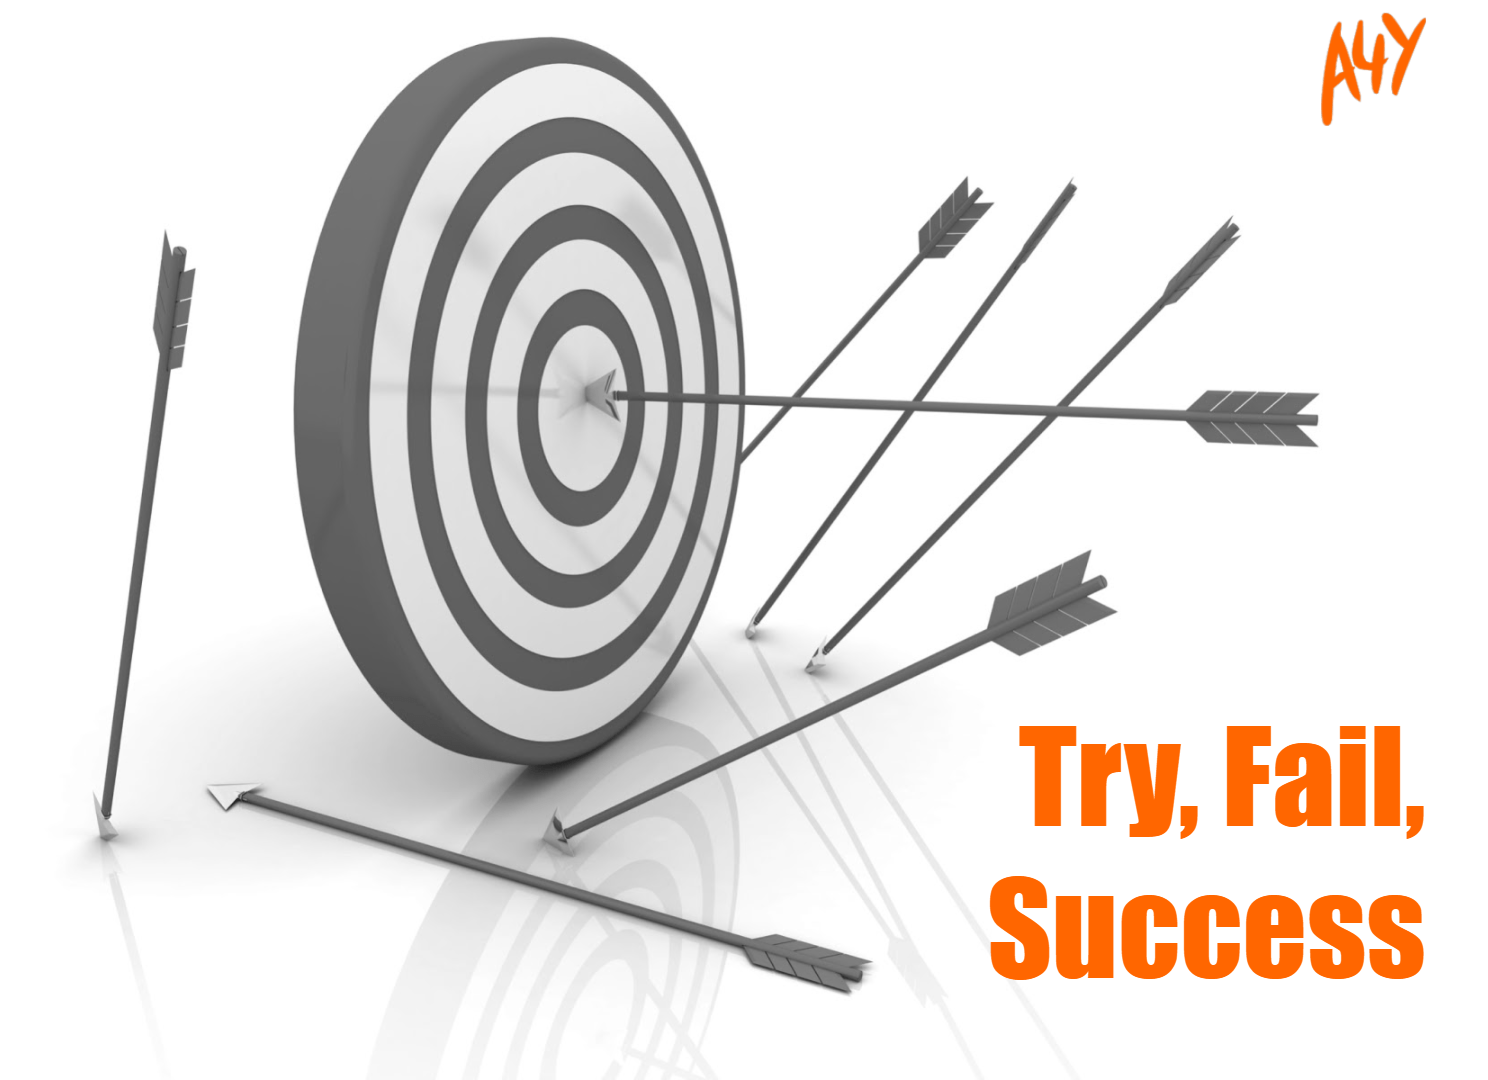 Try, Fail, Success